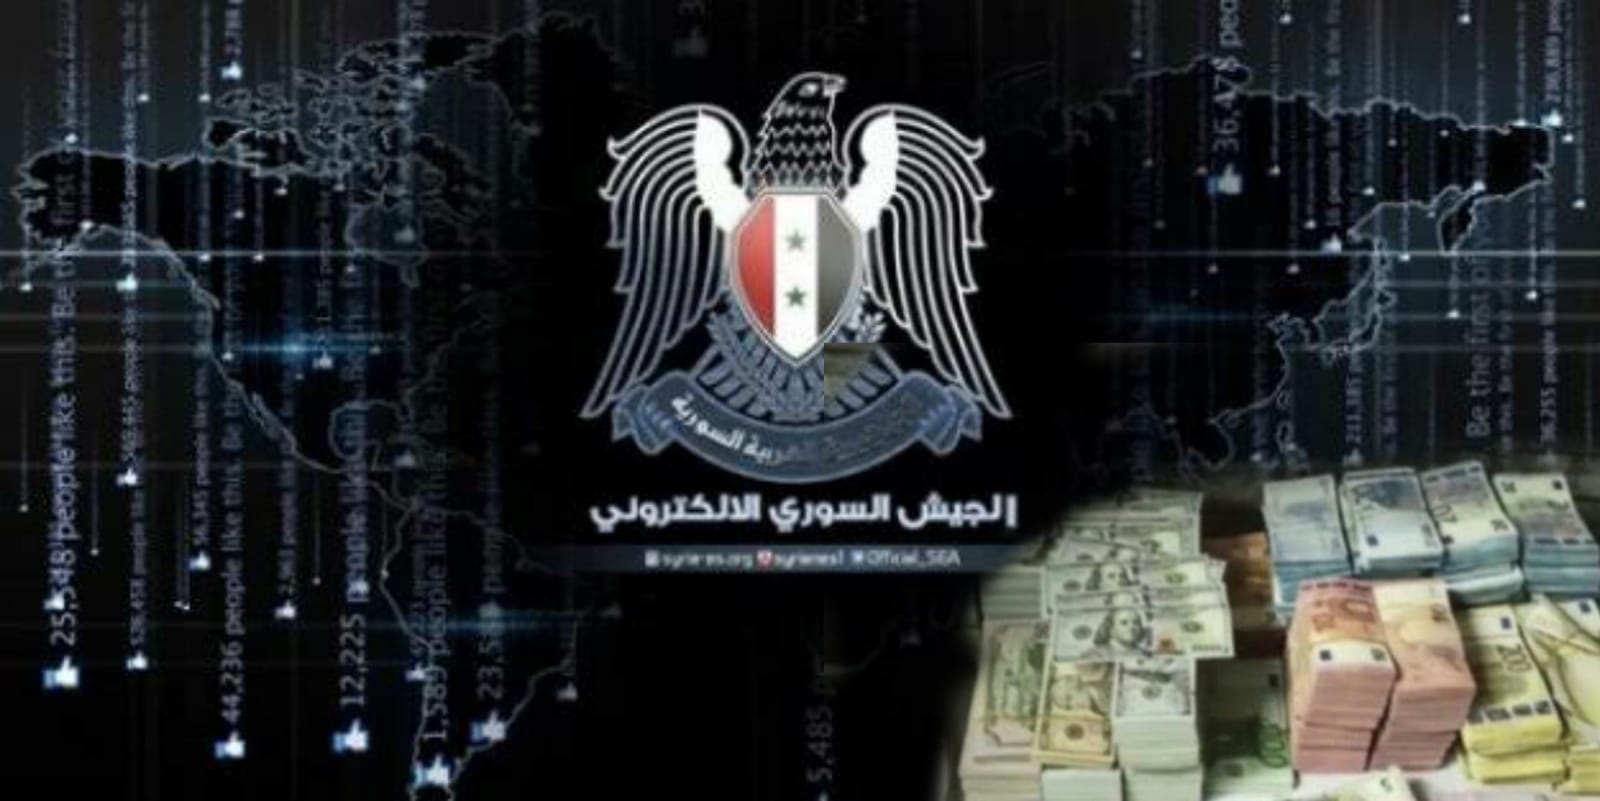 Suriyeli Hacker çetesi çökertildi: 30 milyon TL ortada kaldı